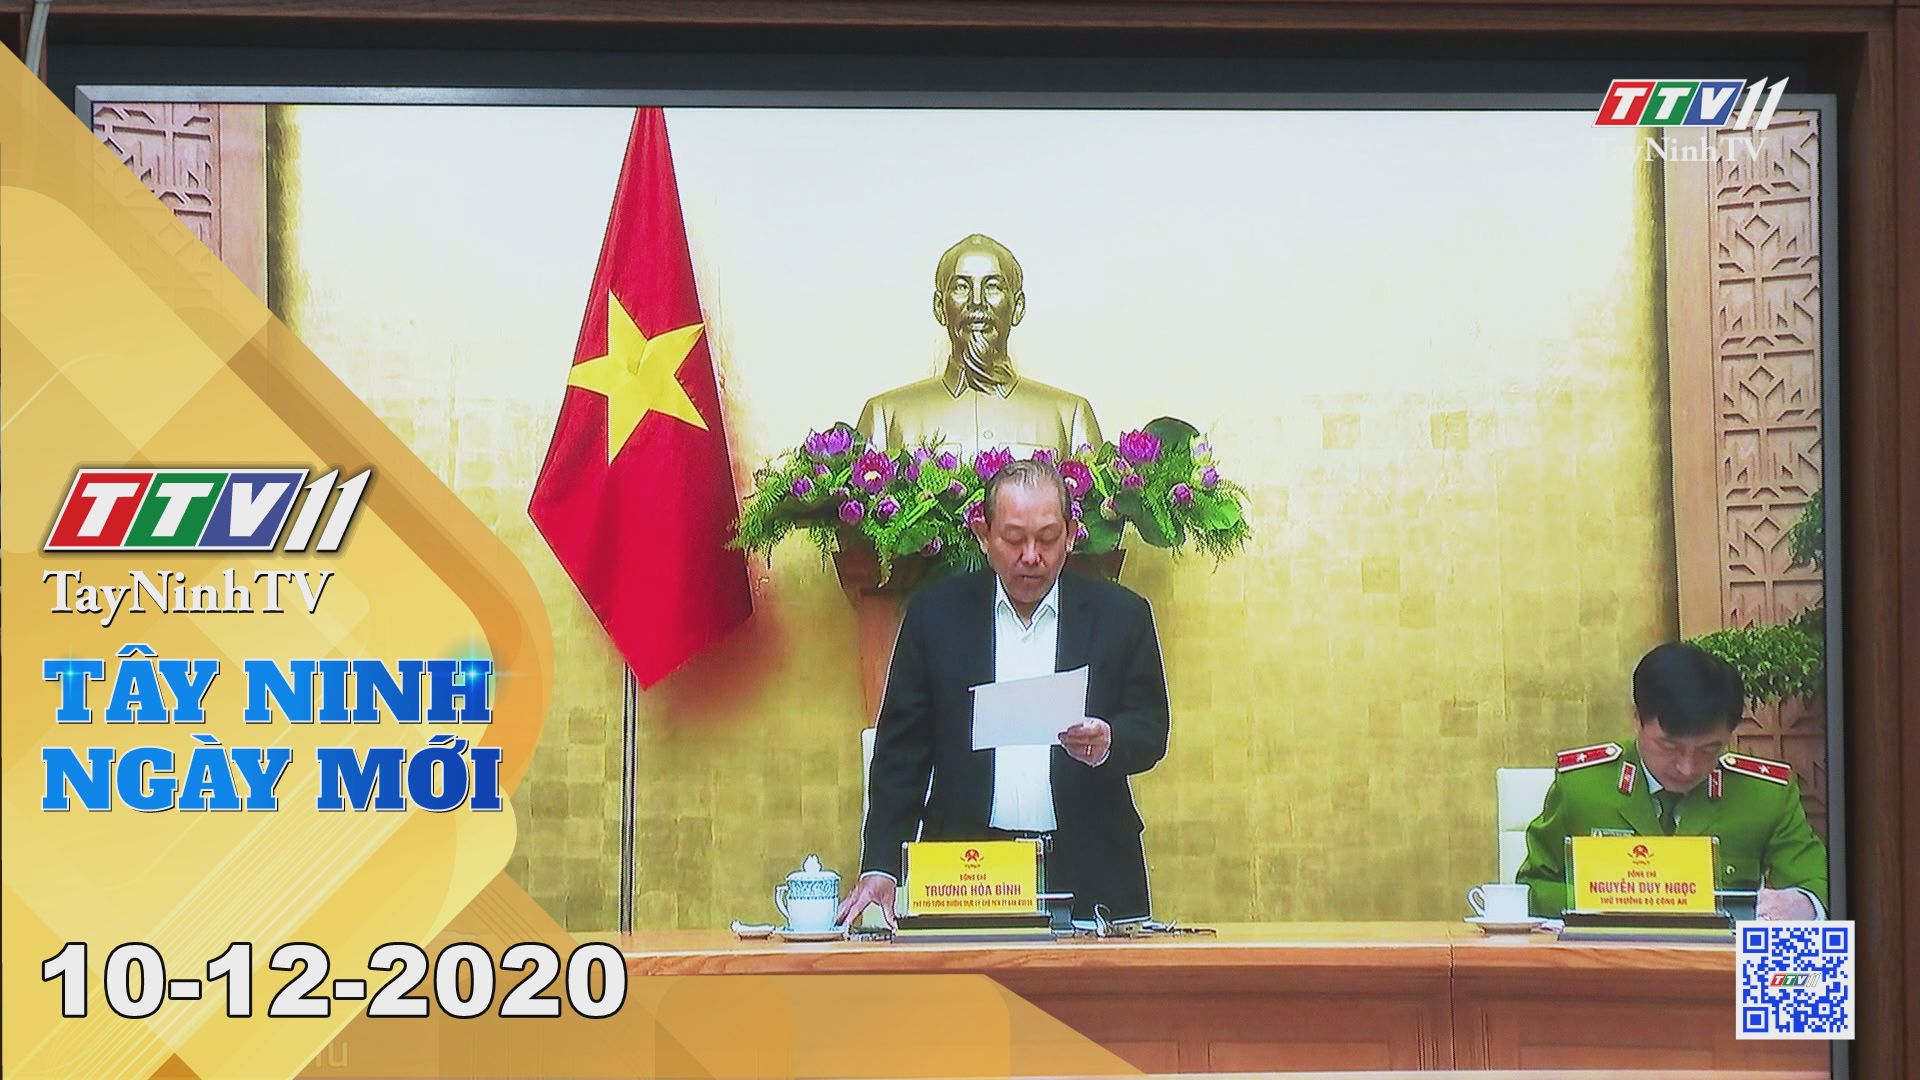 Tây Ninh Ngày Mới 10-12-2020 | Tin tức hôm nay | TayNinhTV